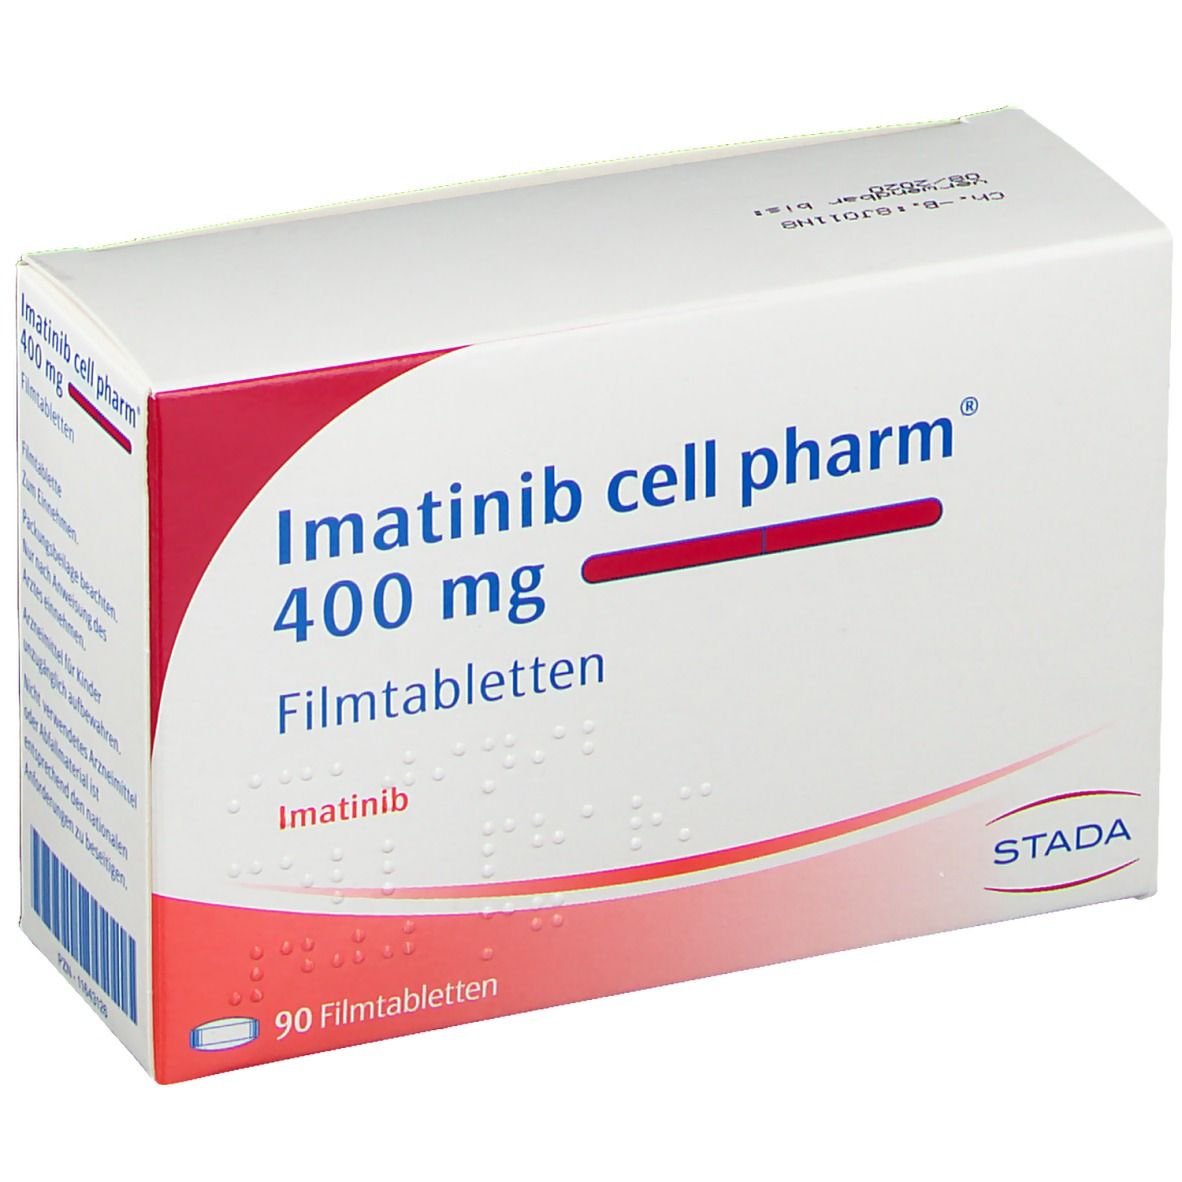 Imatinib cell pharm® 400 mg